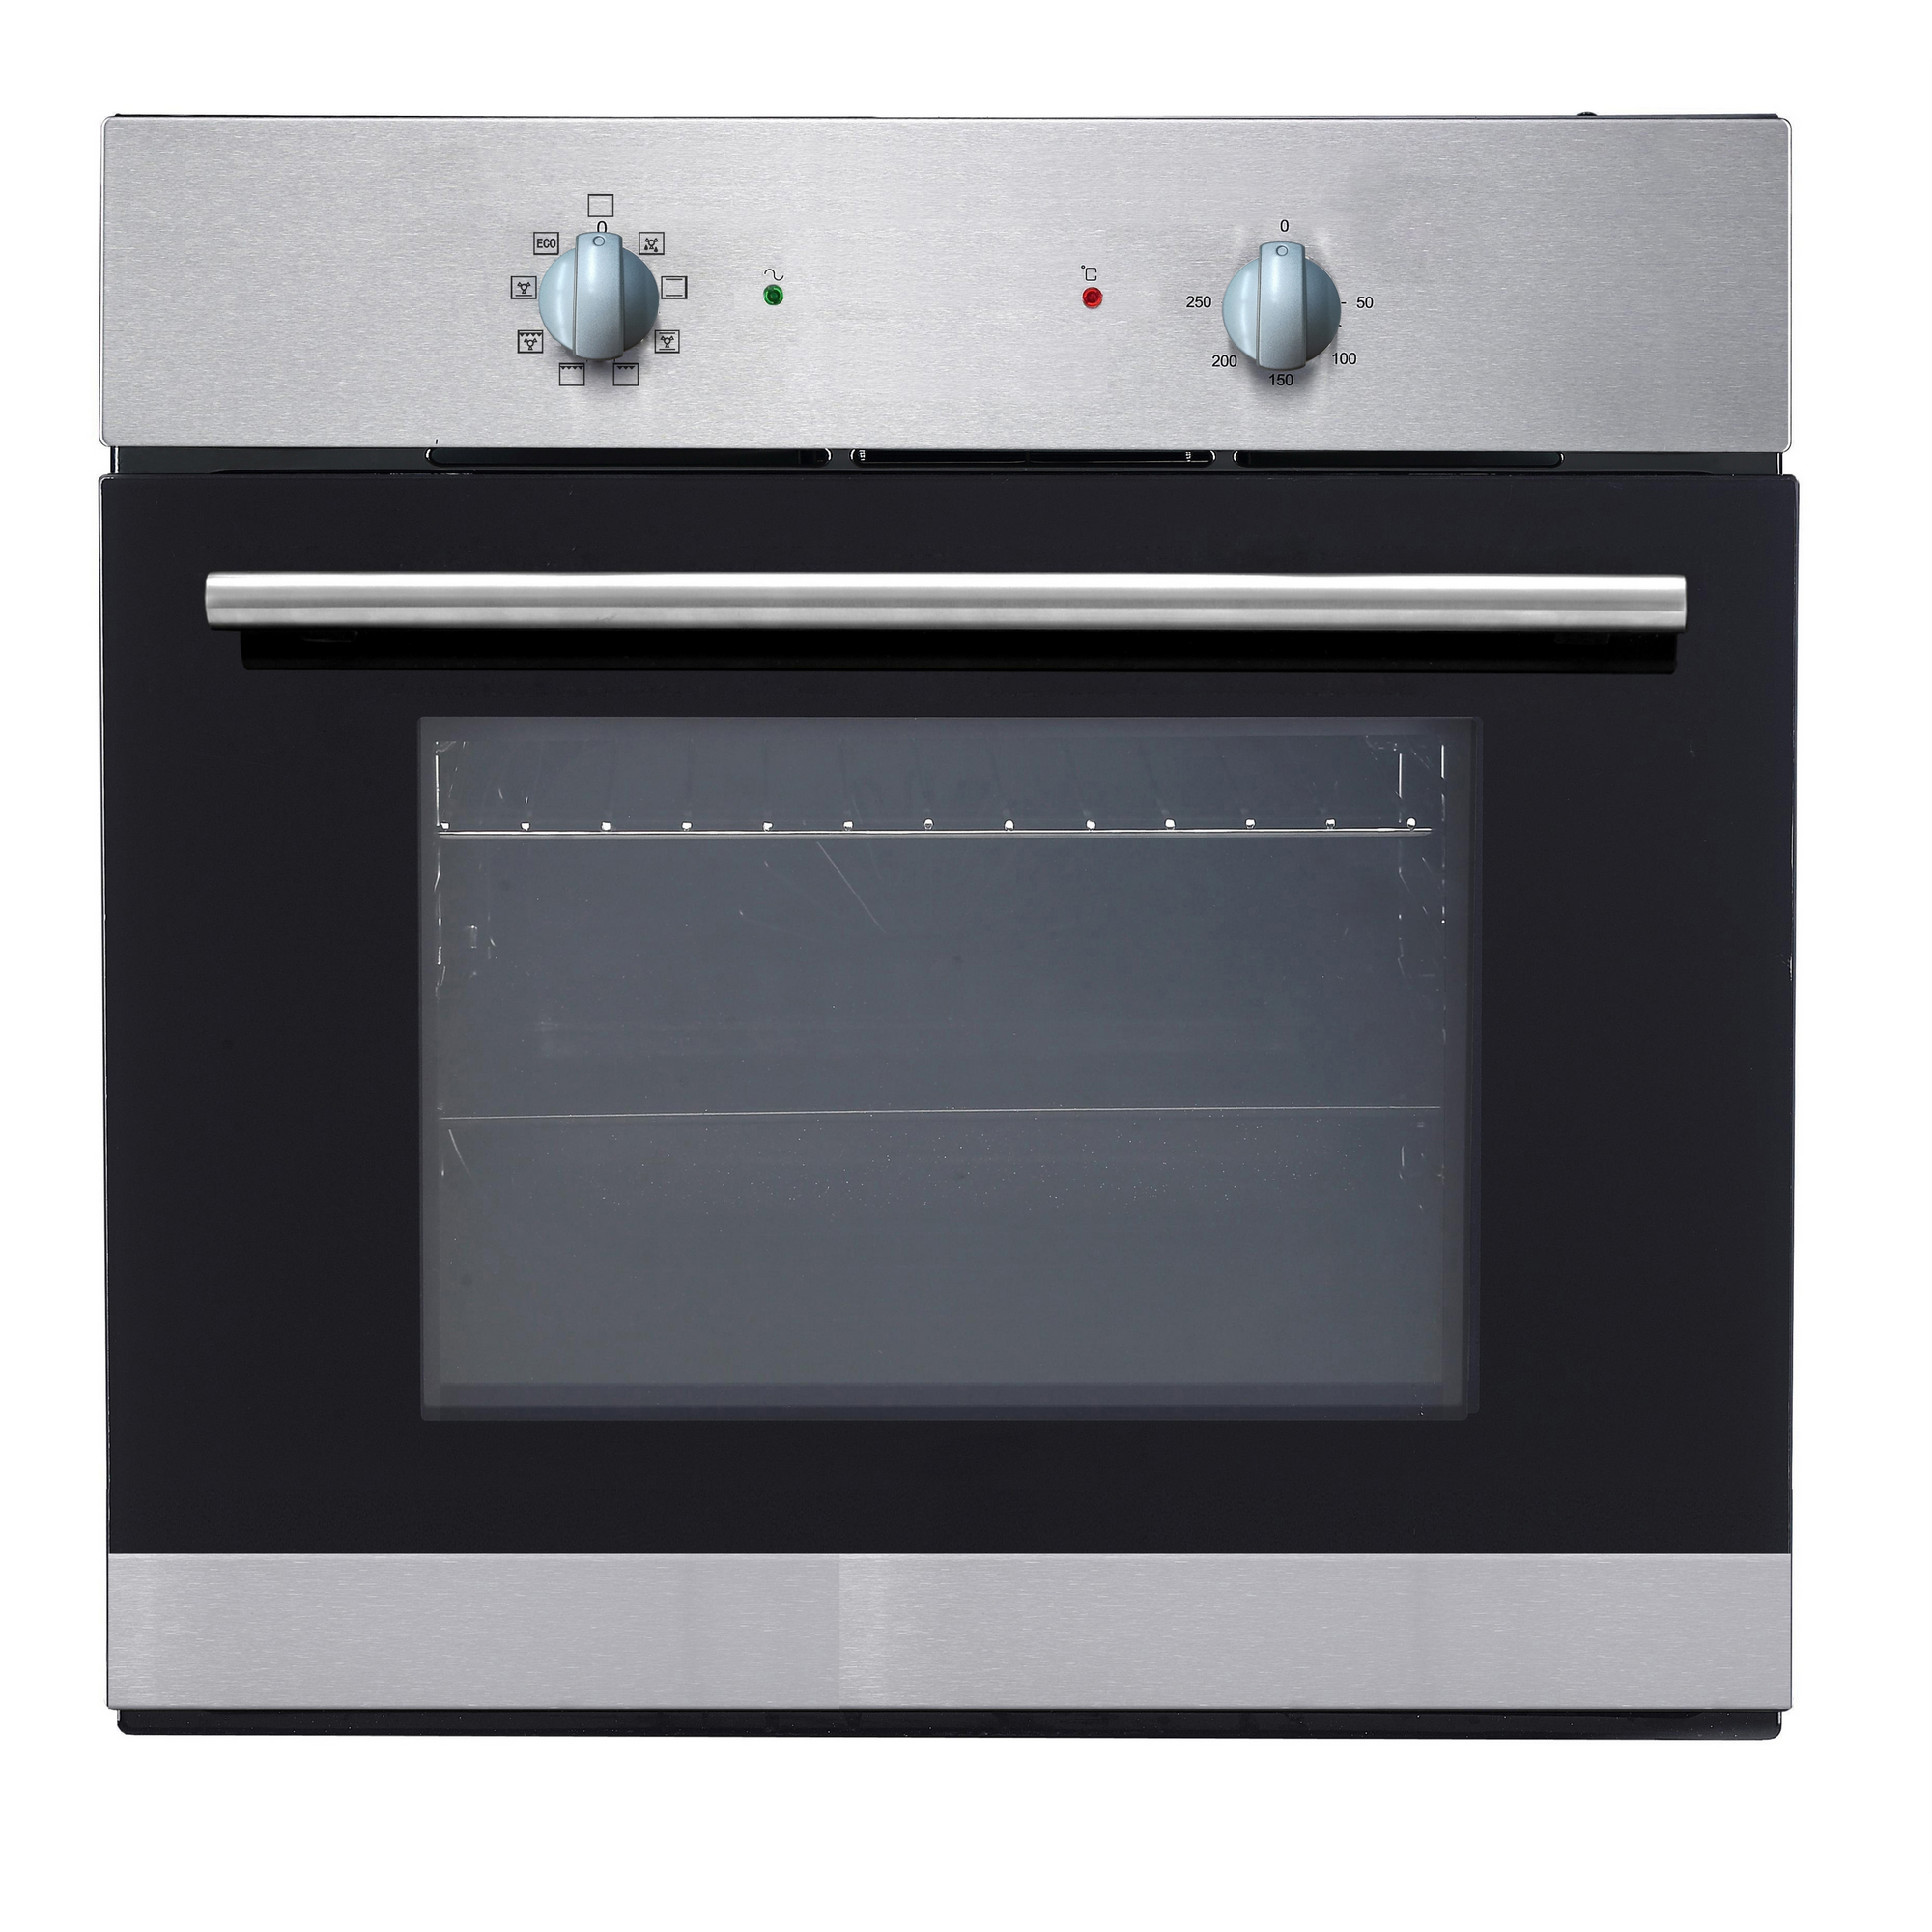 Küchenzeile mit E-Geräten 'OPTIkompakt Zamora' weiß/eichefarben 270 cm + product picture